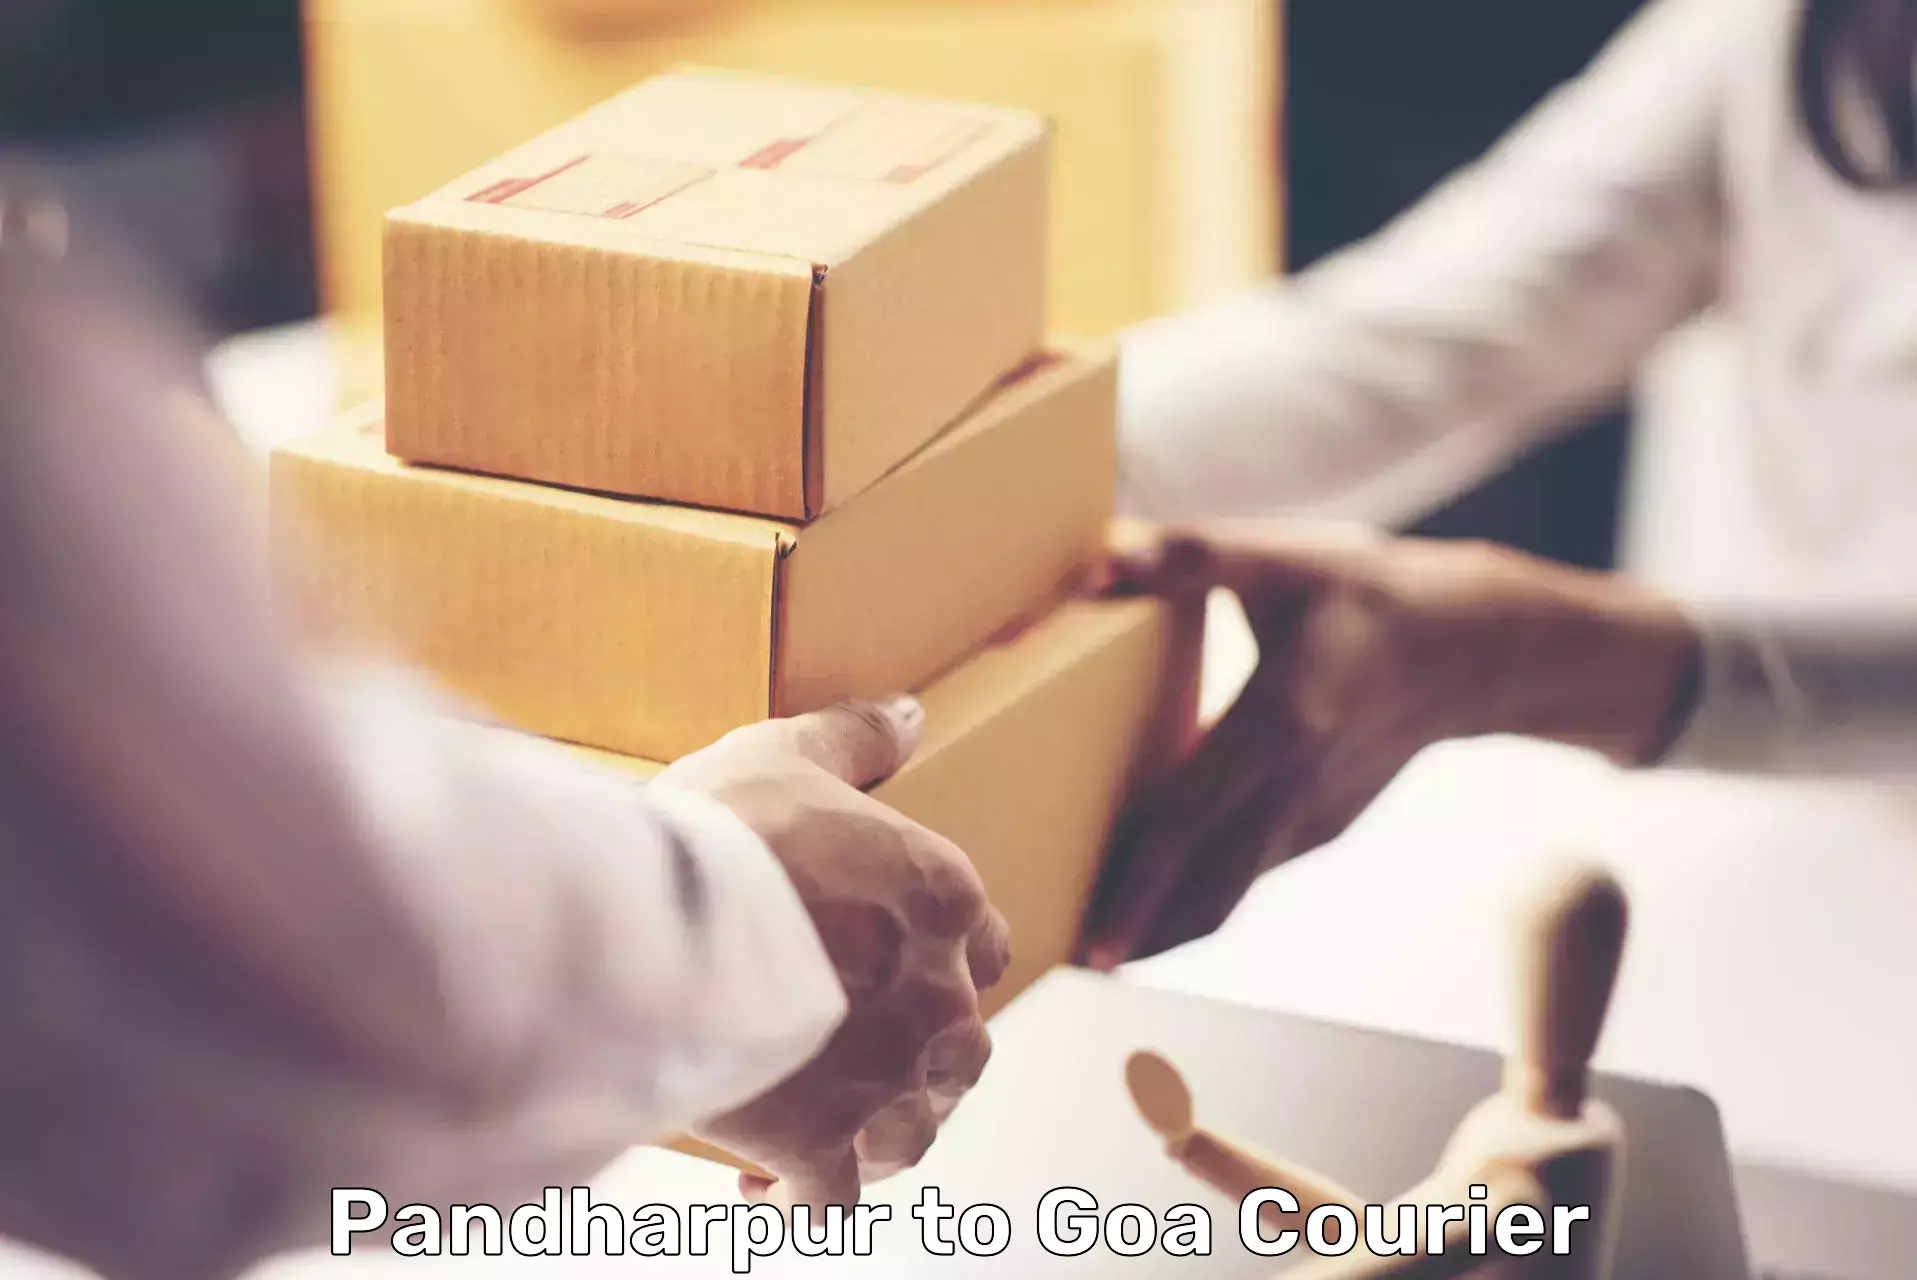 Courier app Pandharpur to Panjim